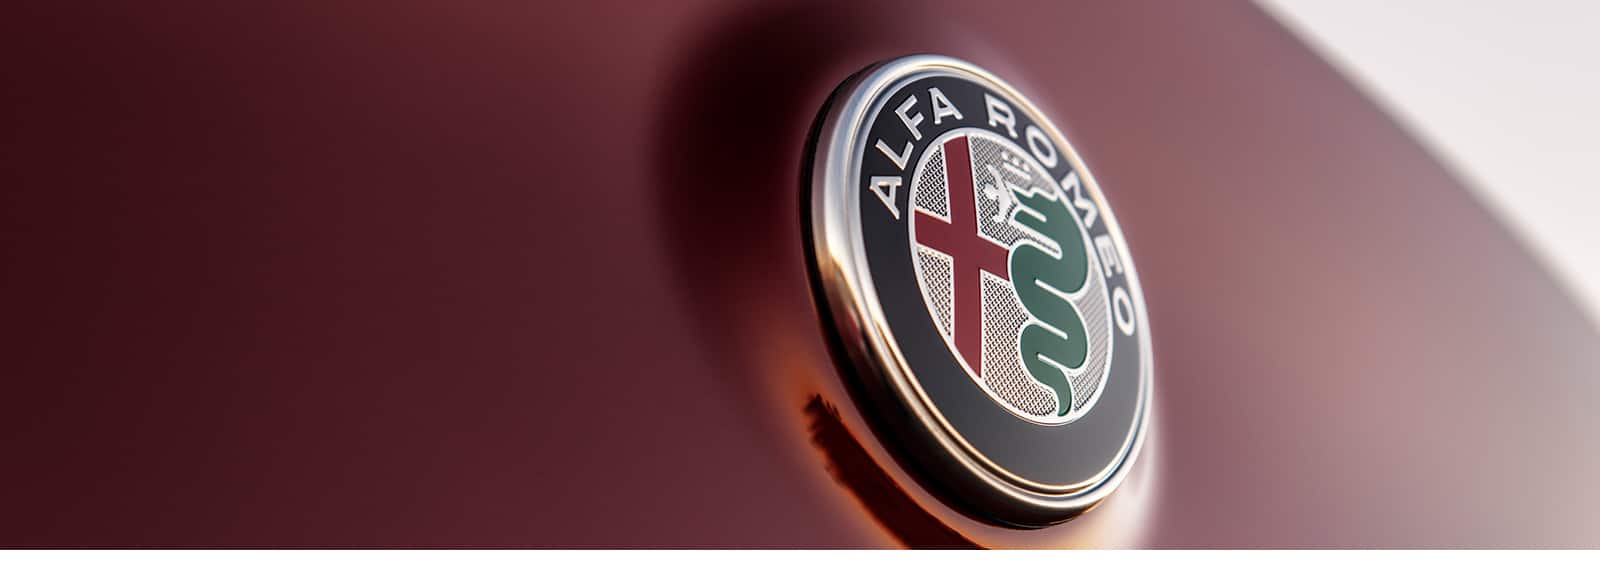 A close-up of the Alfa Romeo badge.